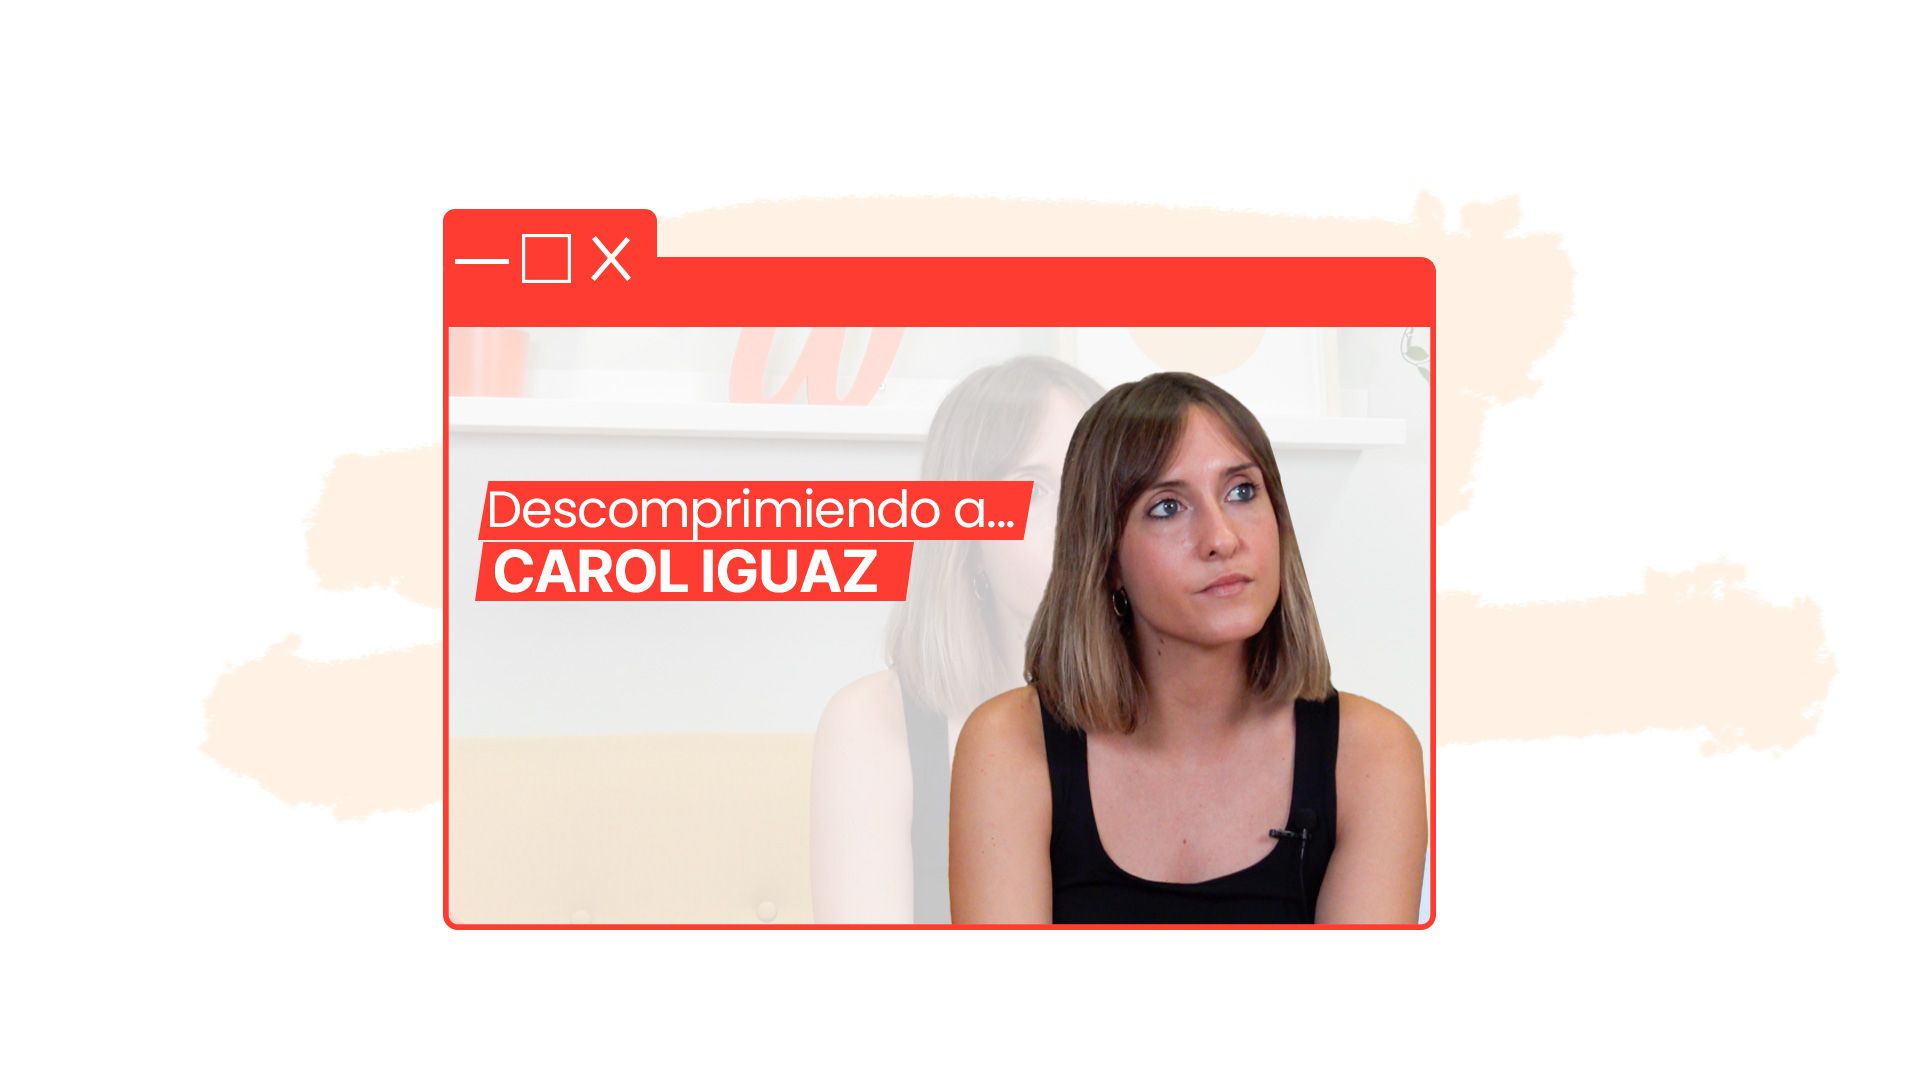 Carolina Iguaz: “El Growth Manager tiene como objetivo posicionar un producto o servicio de una empresa en el entorno digital”